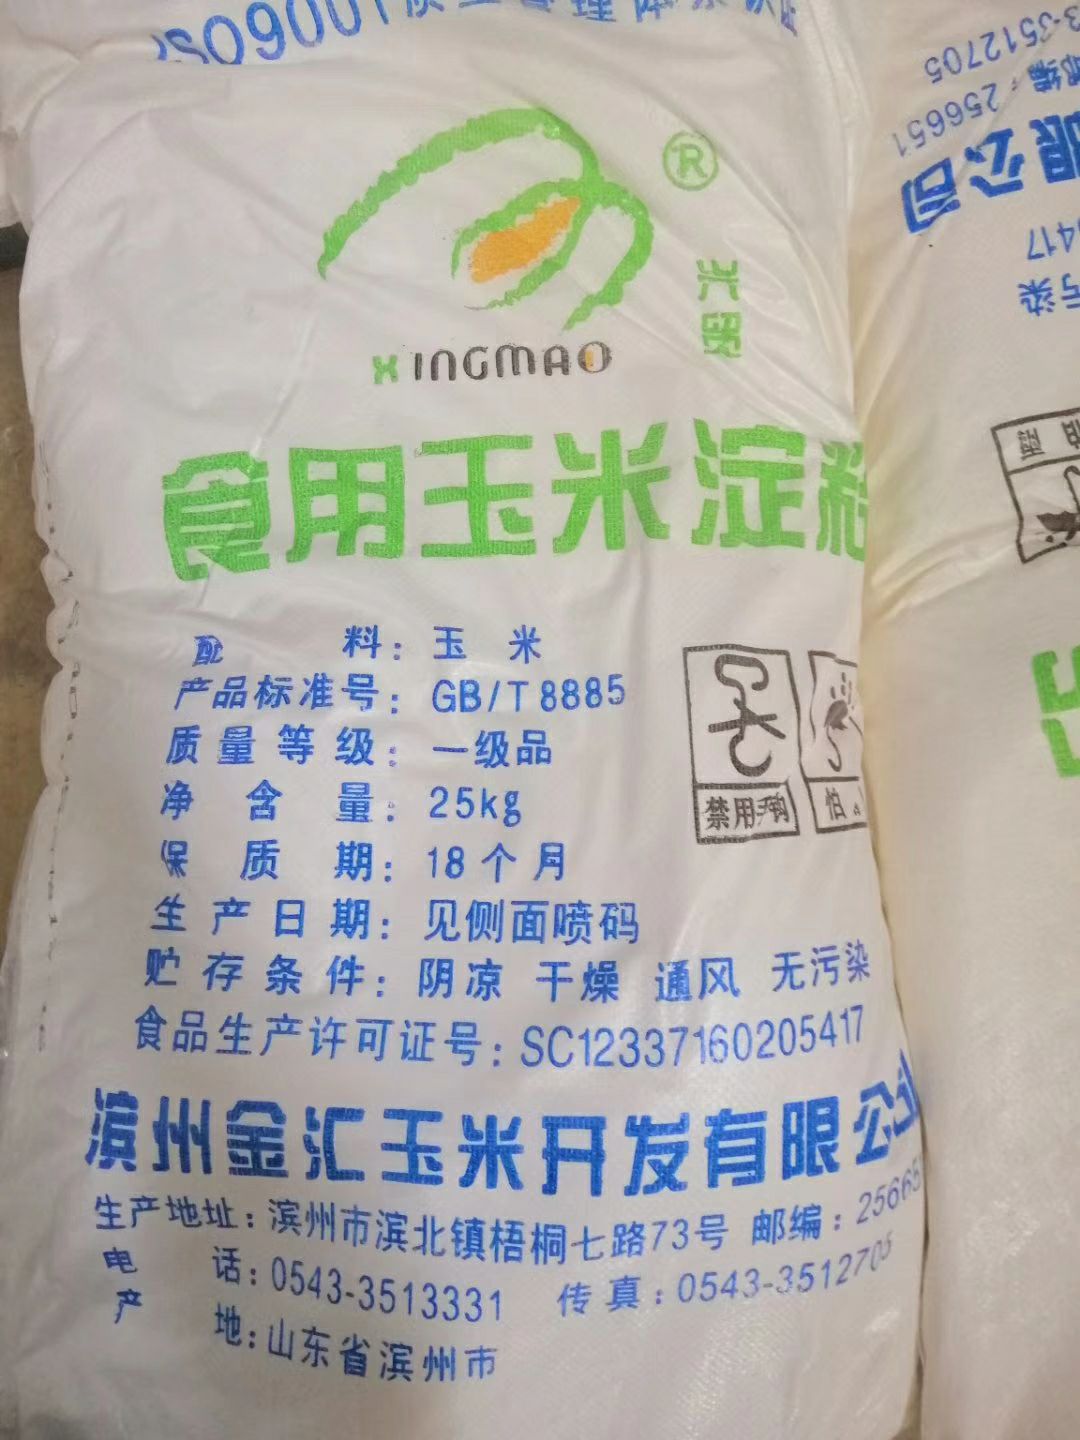 品种名:玉米淀粉 货品包装:袋装